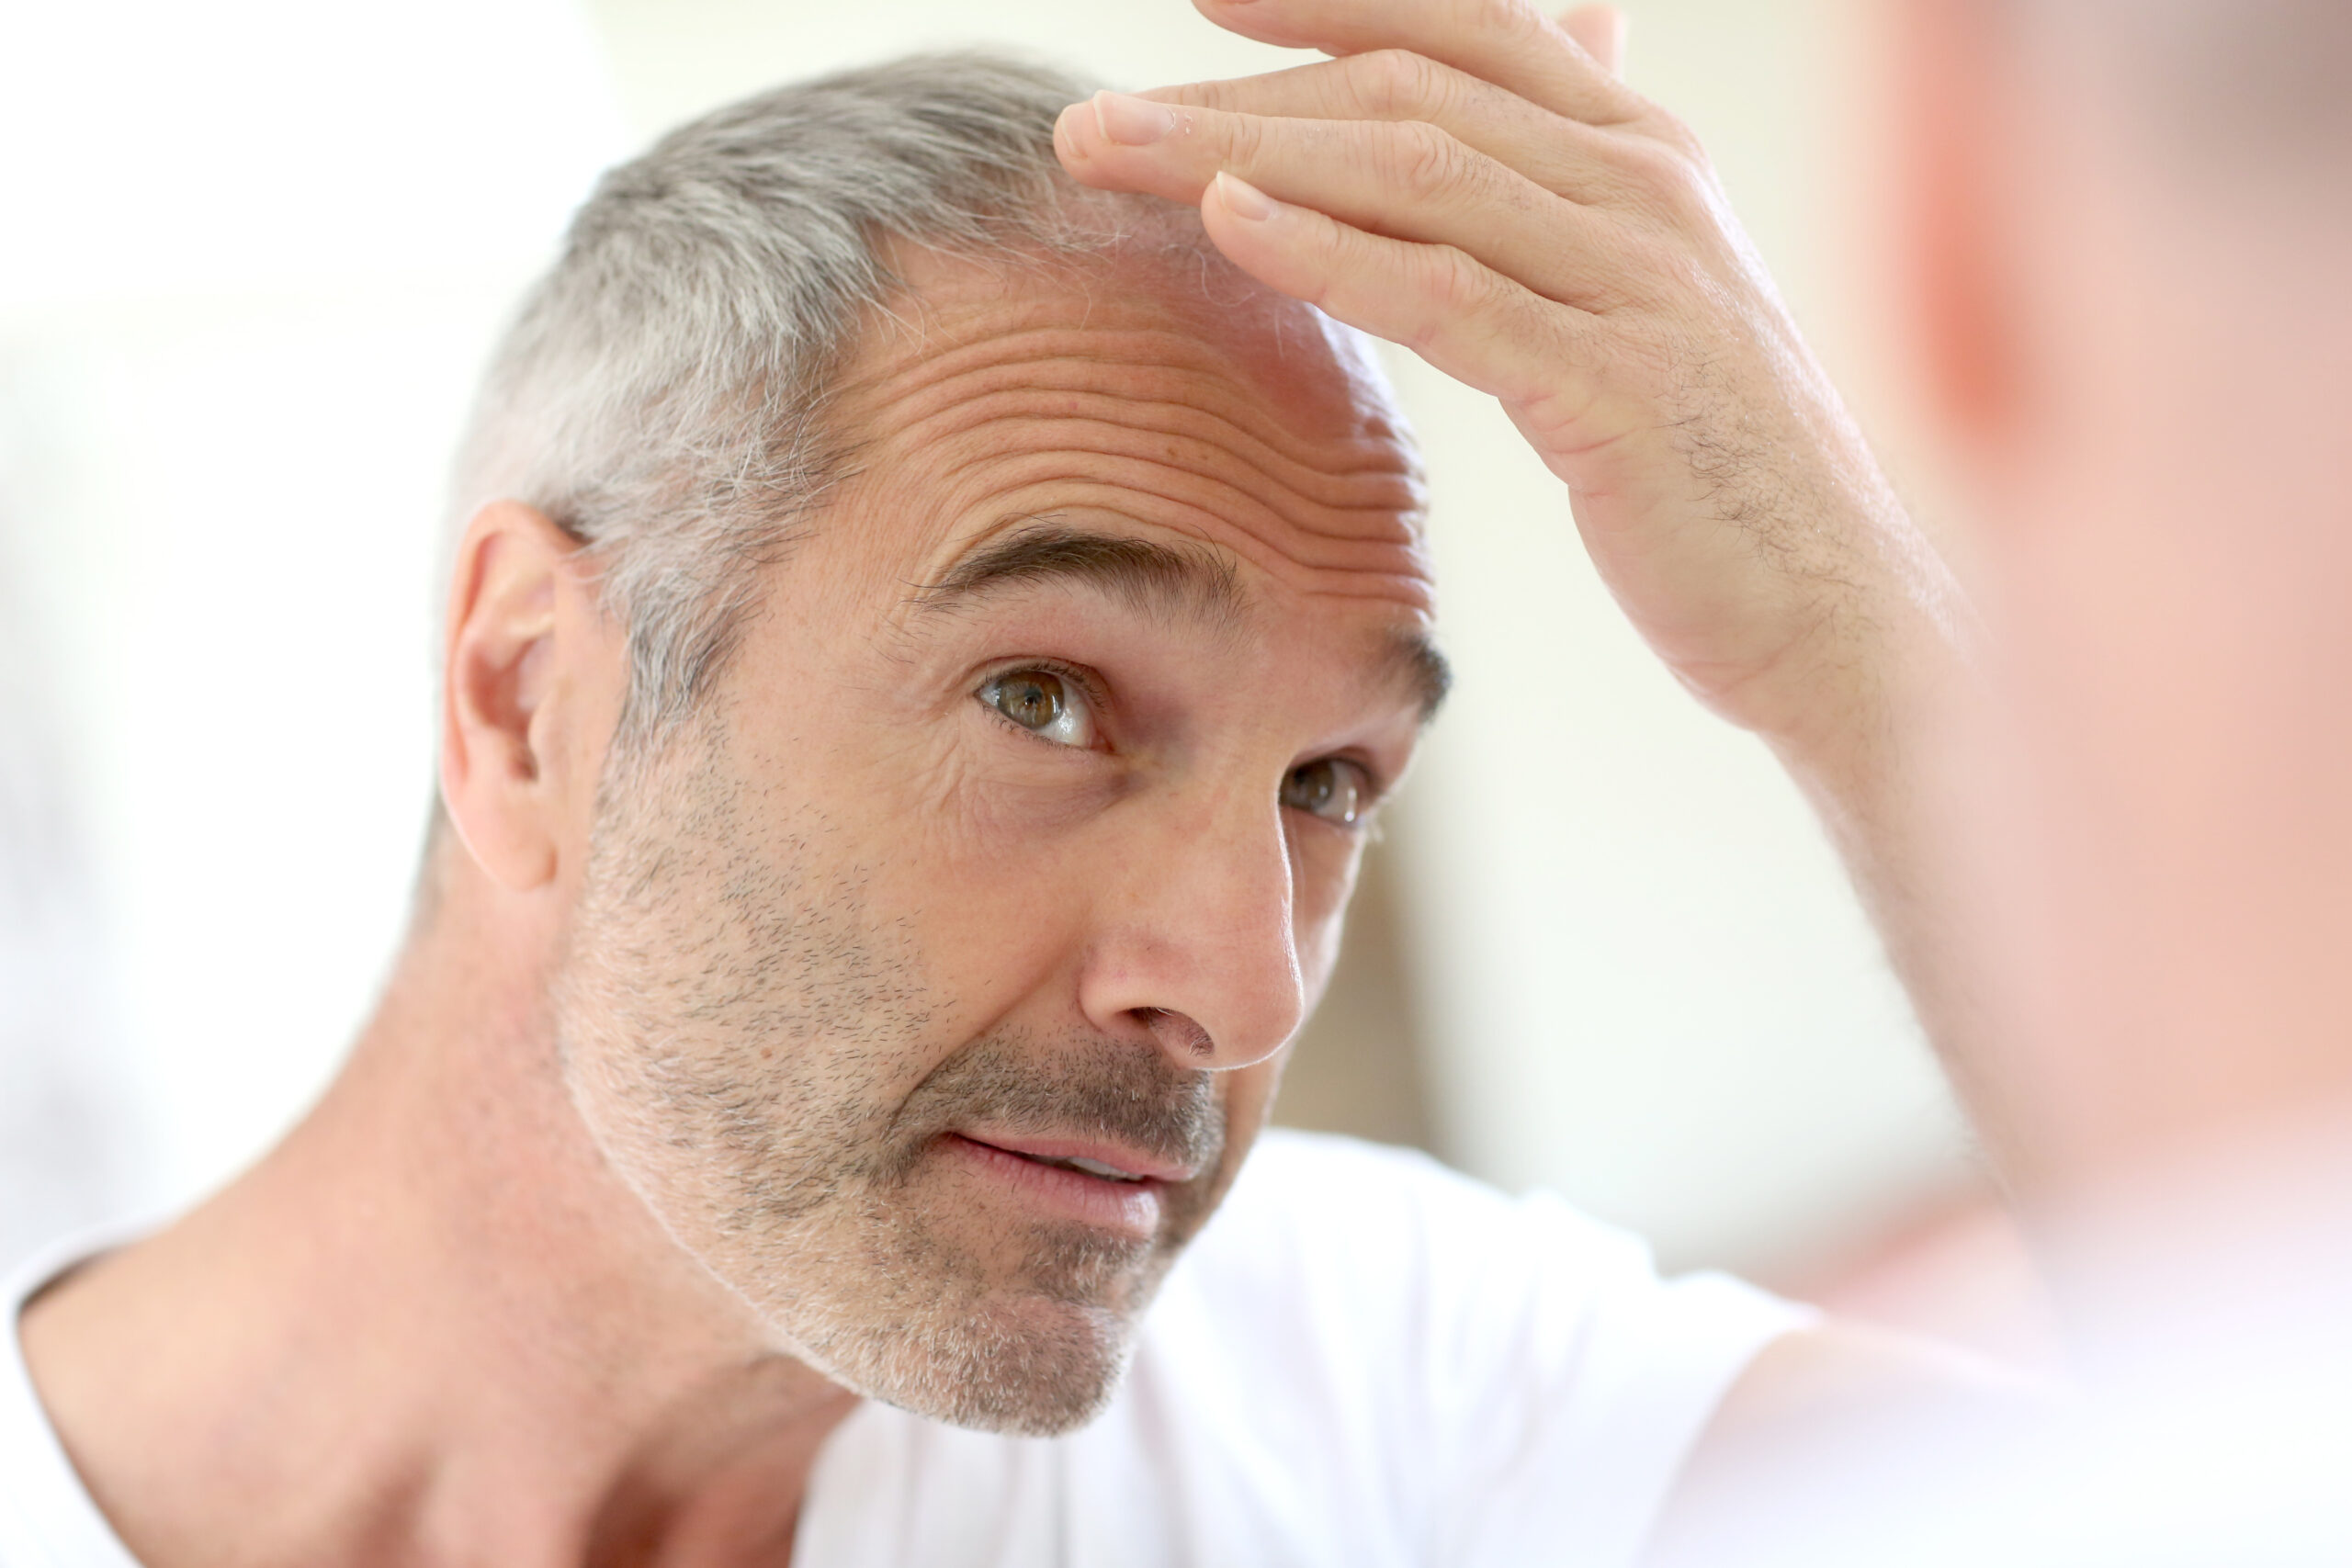 Łysienie androgenowe – przyczyny, objawy łysienia u kobiet i mężczyzn